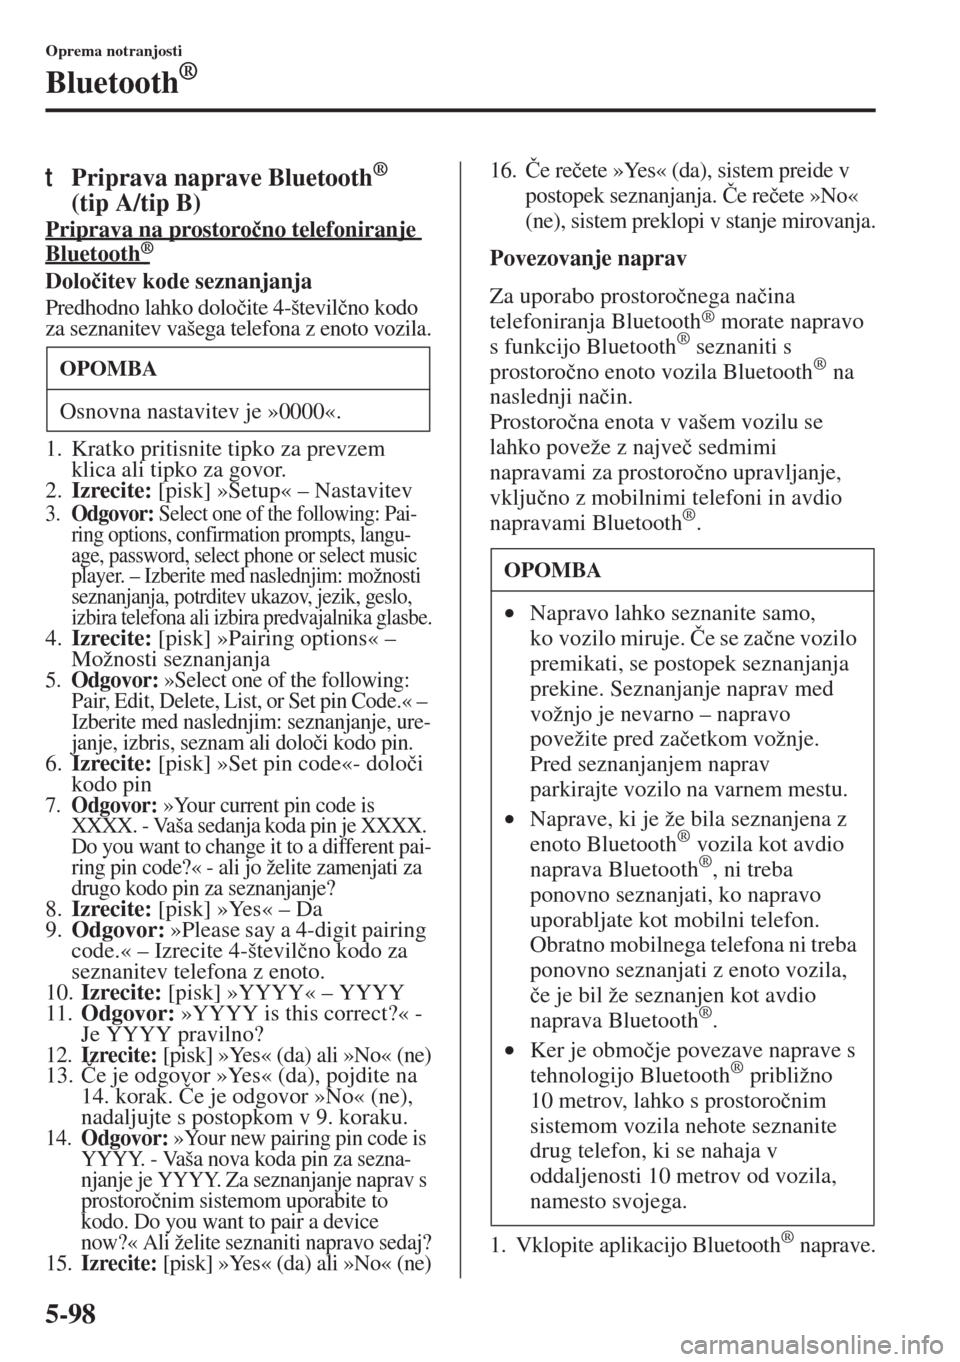 MAZDA MODEL 3 HATCHBACK 2015  Priročnik za lastnika (in Slovenian) 5-98
Oprema notranjosti
Bluetooth®
tPriprava naprave Bluetooth® 
(tip A/tip B)
Priprava na prostoro�þno telefoniranje 
Bluetooth           
®
Dolo�þitev kode seznanjanja
Predhodno lahko dolo�þit